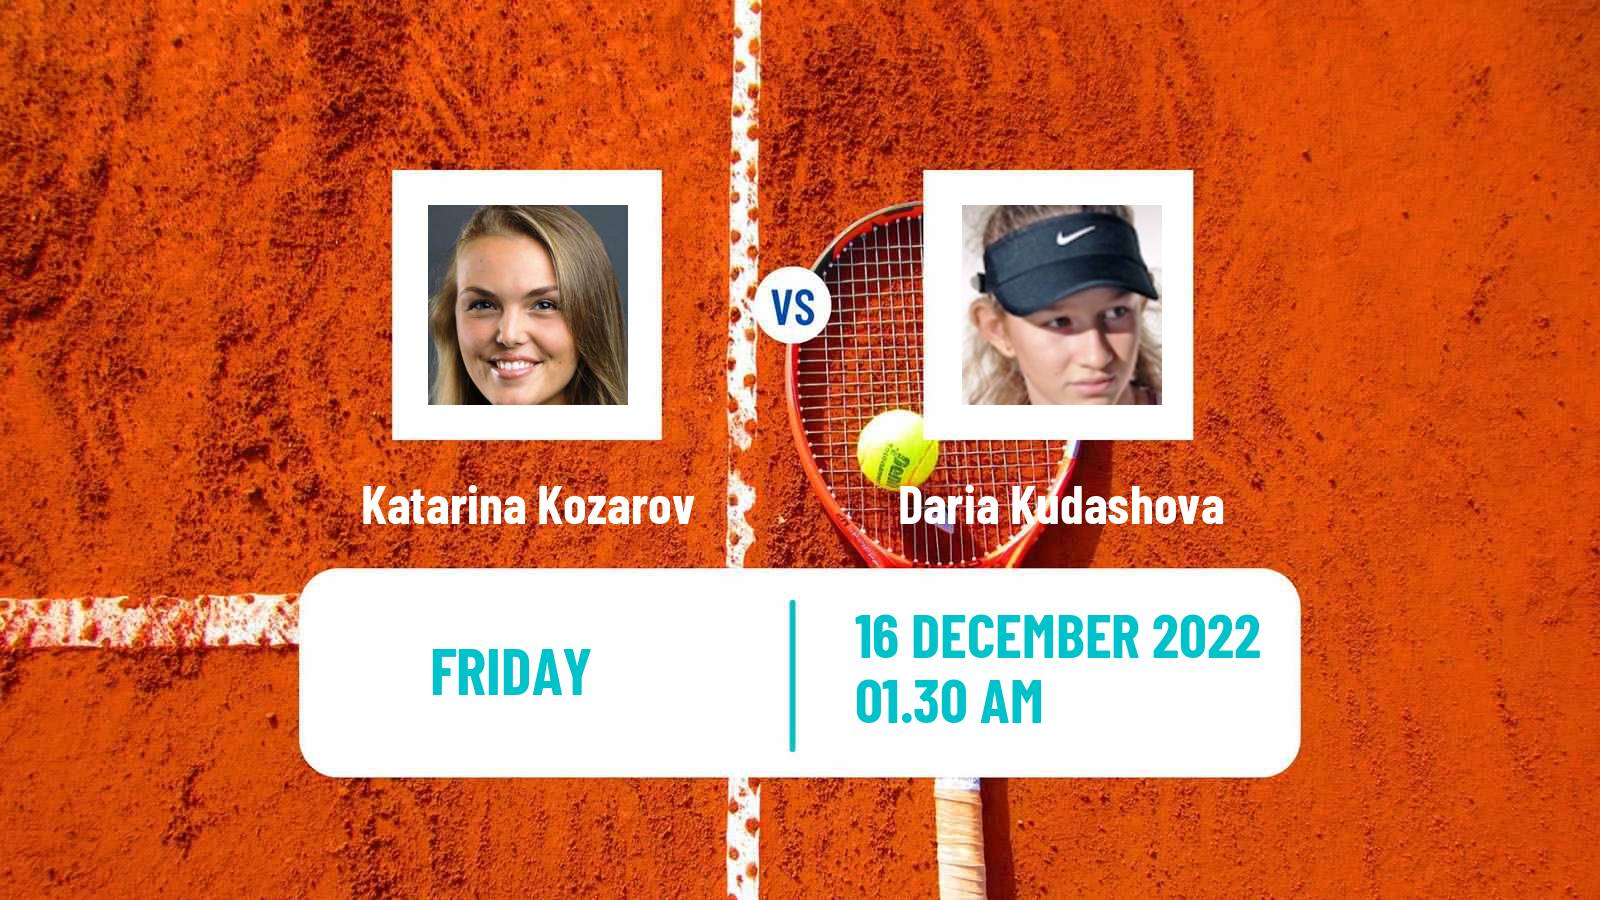 Tennis ITF Tournaments Katarina Kozarov - Daria Kudashova